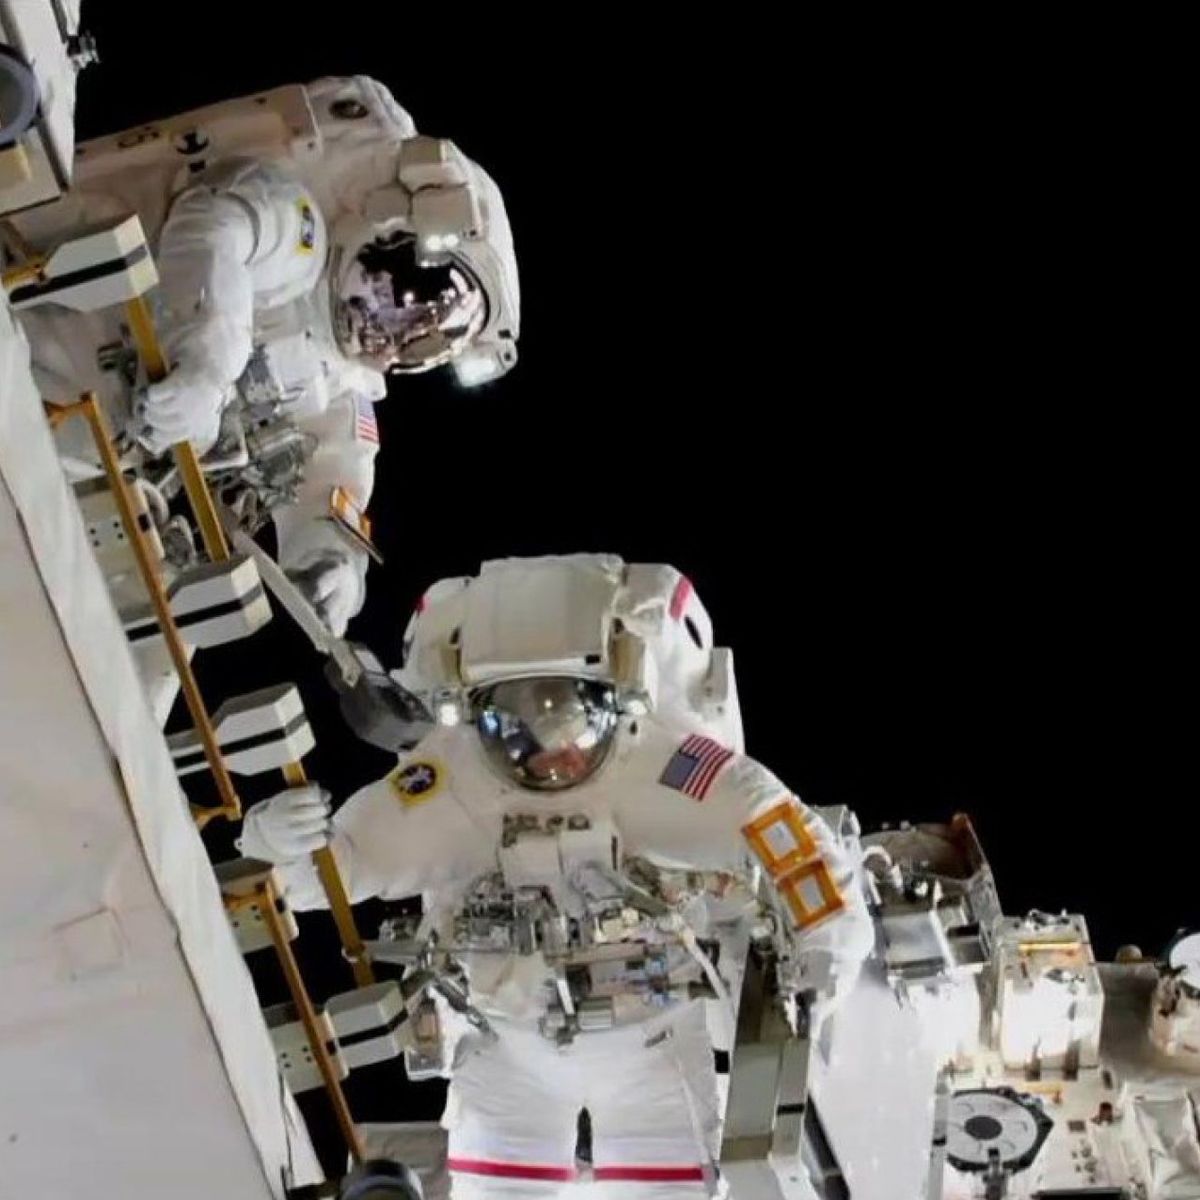 La NASA inventa una cota de malla para proteger a los astronautas -  26.04.2017, Sputnik Mundo